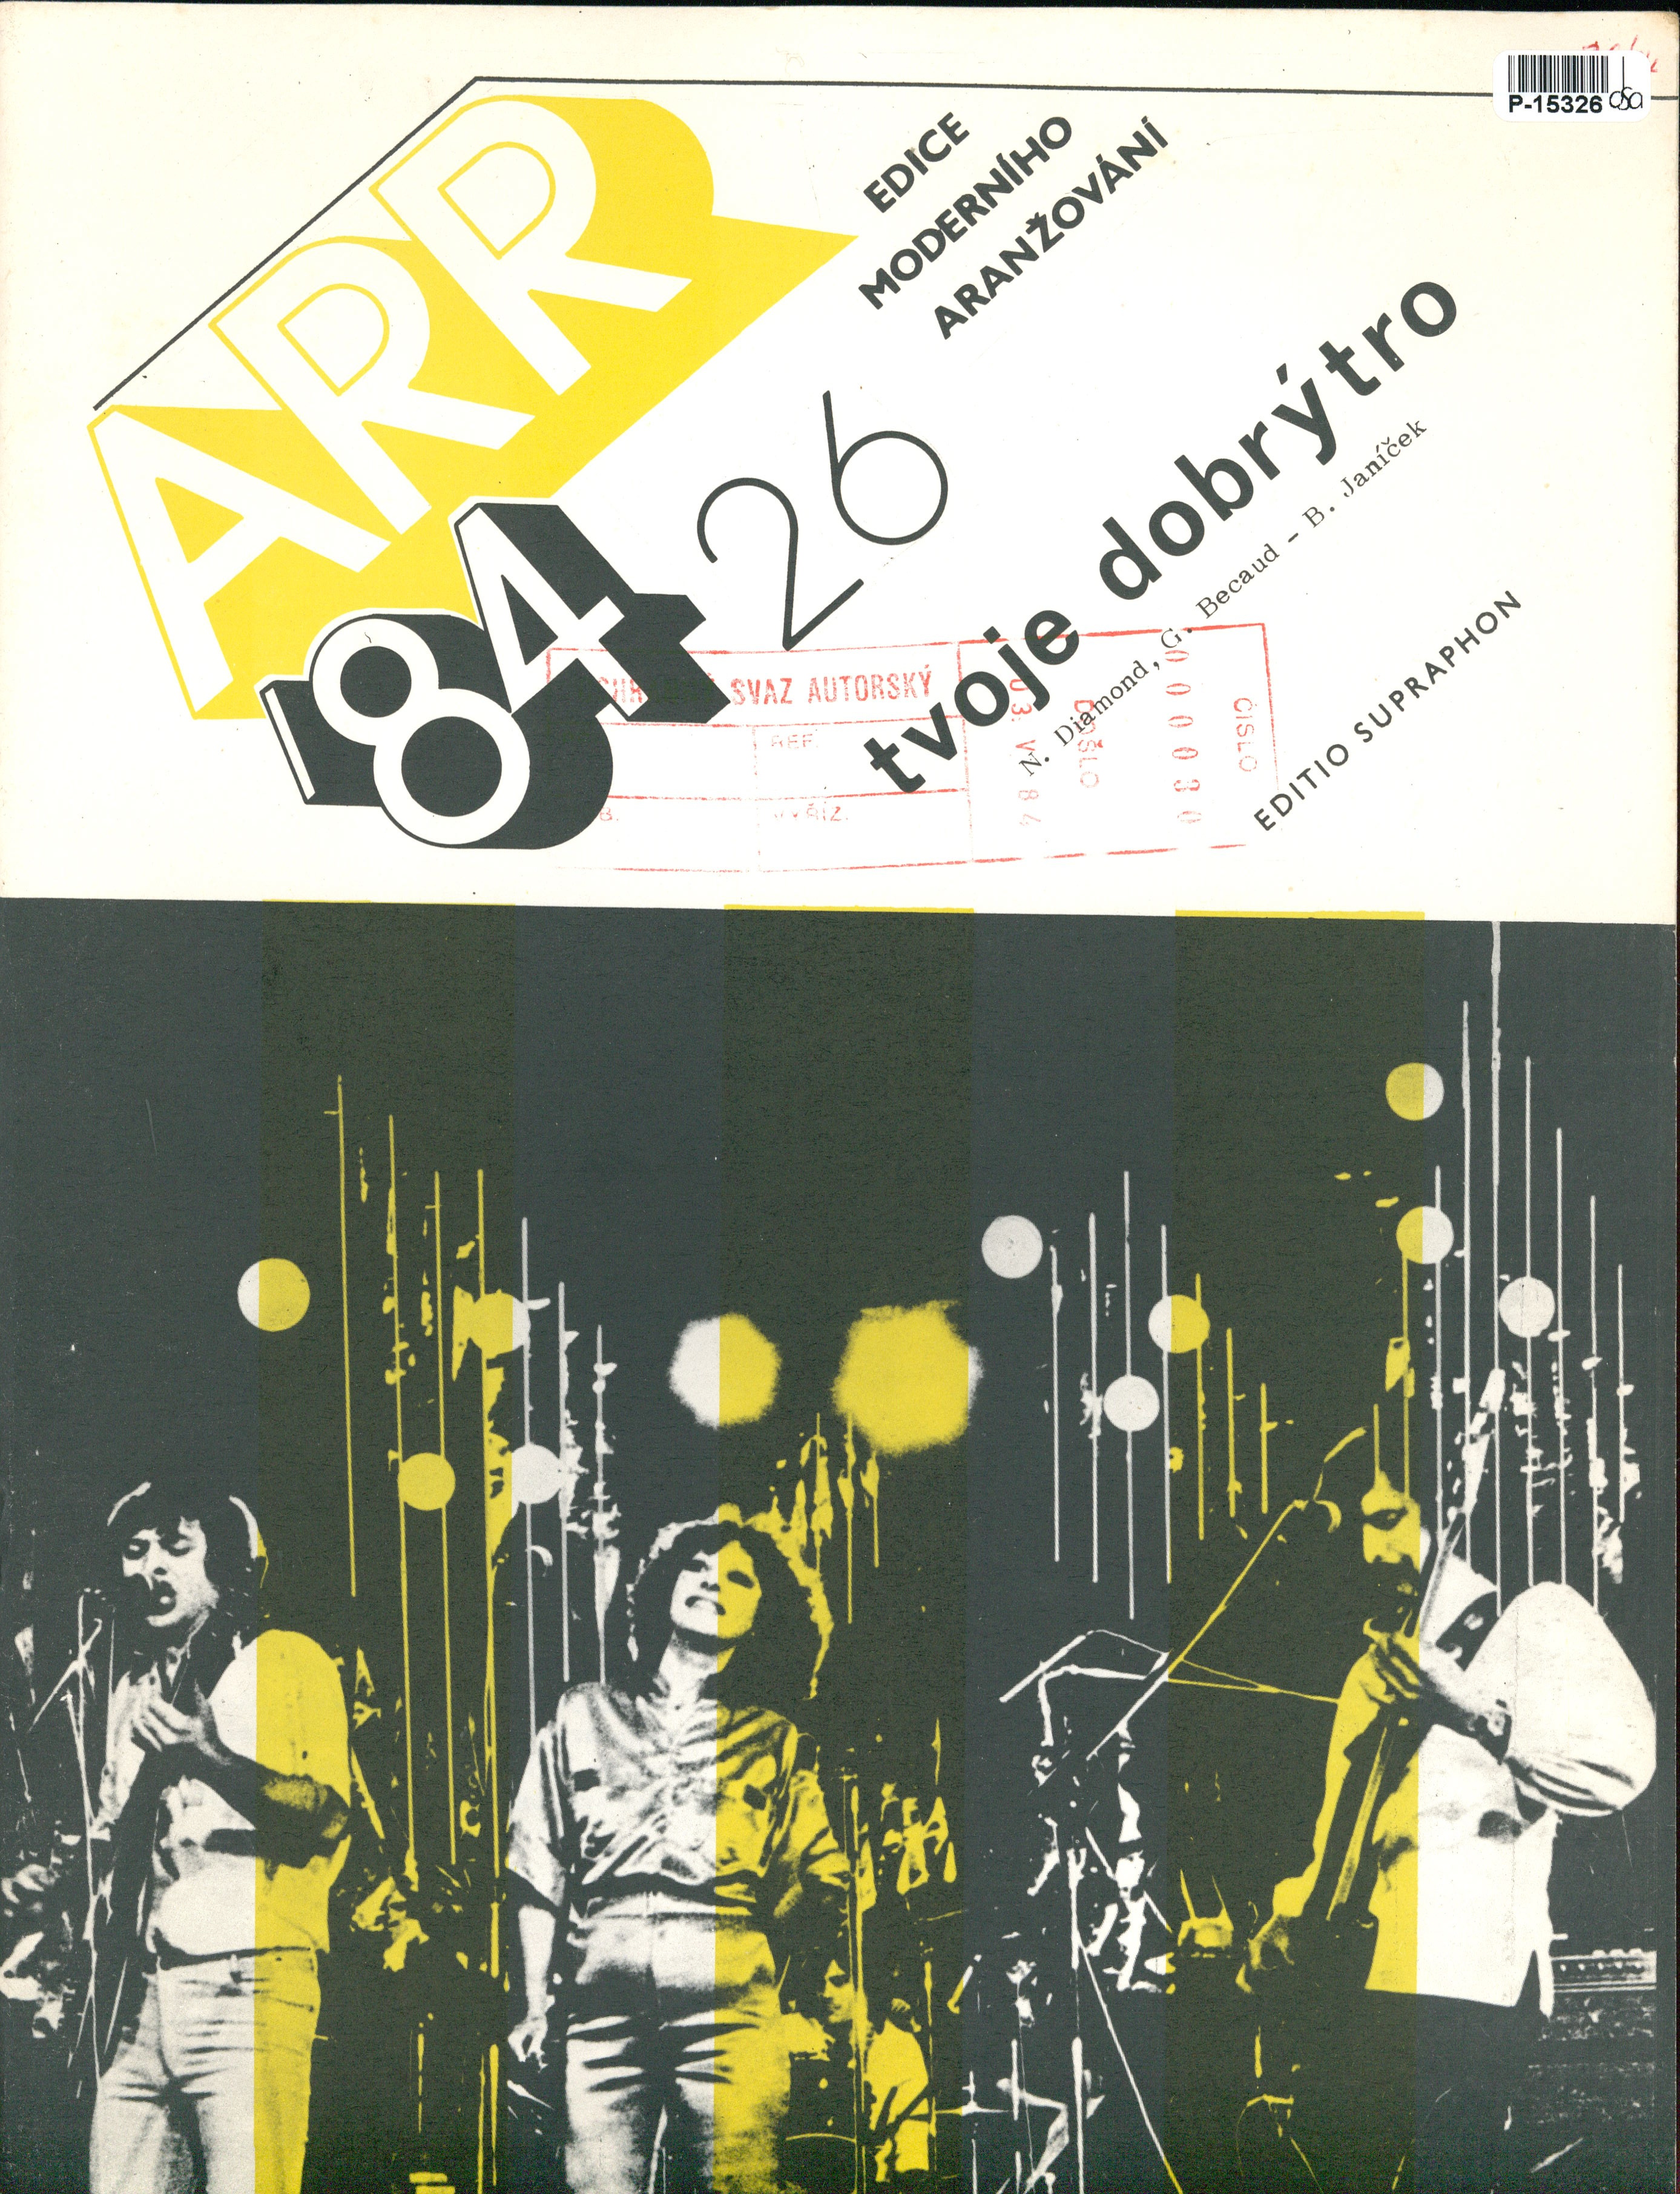 ARR '84 - Edice moderního aražování 26